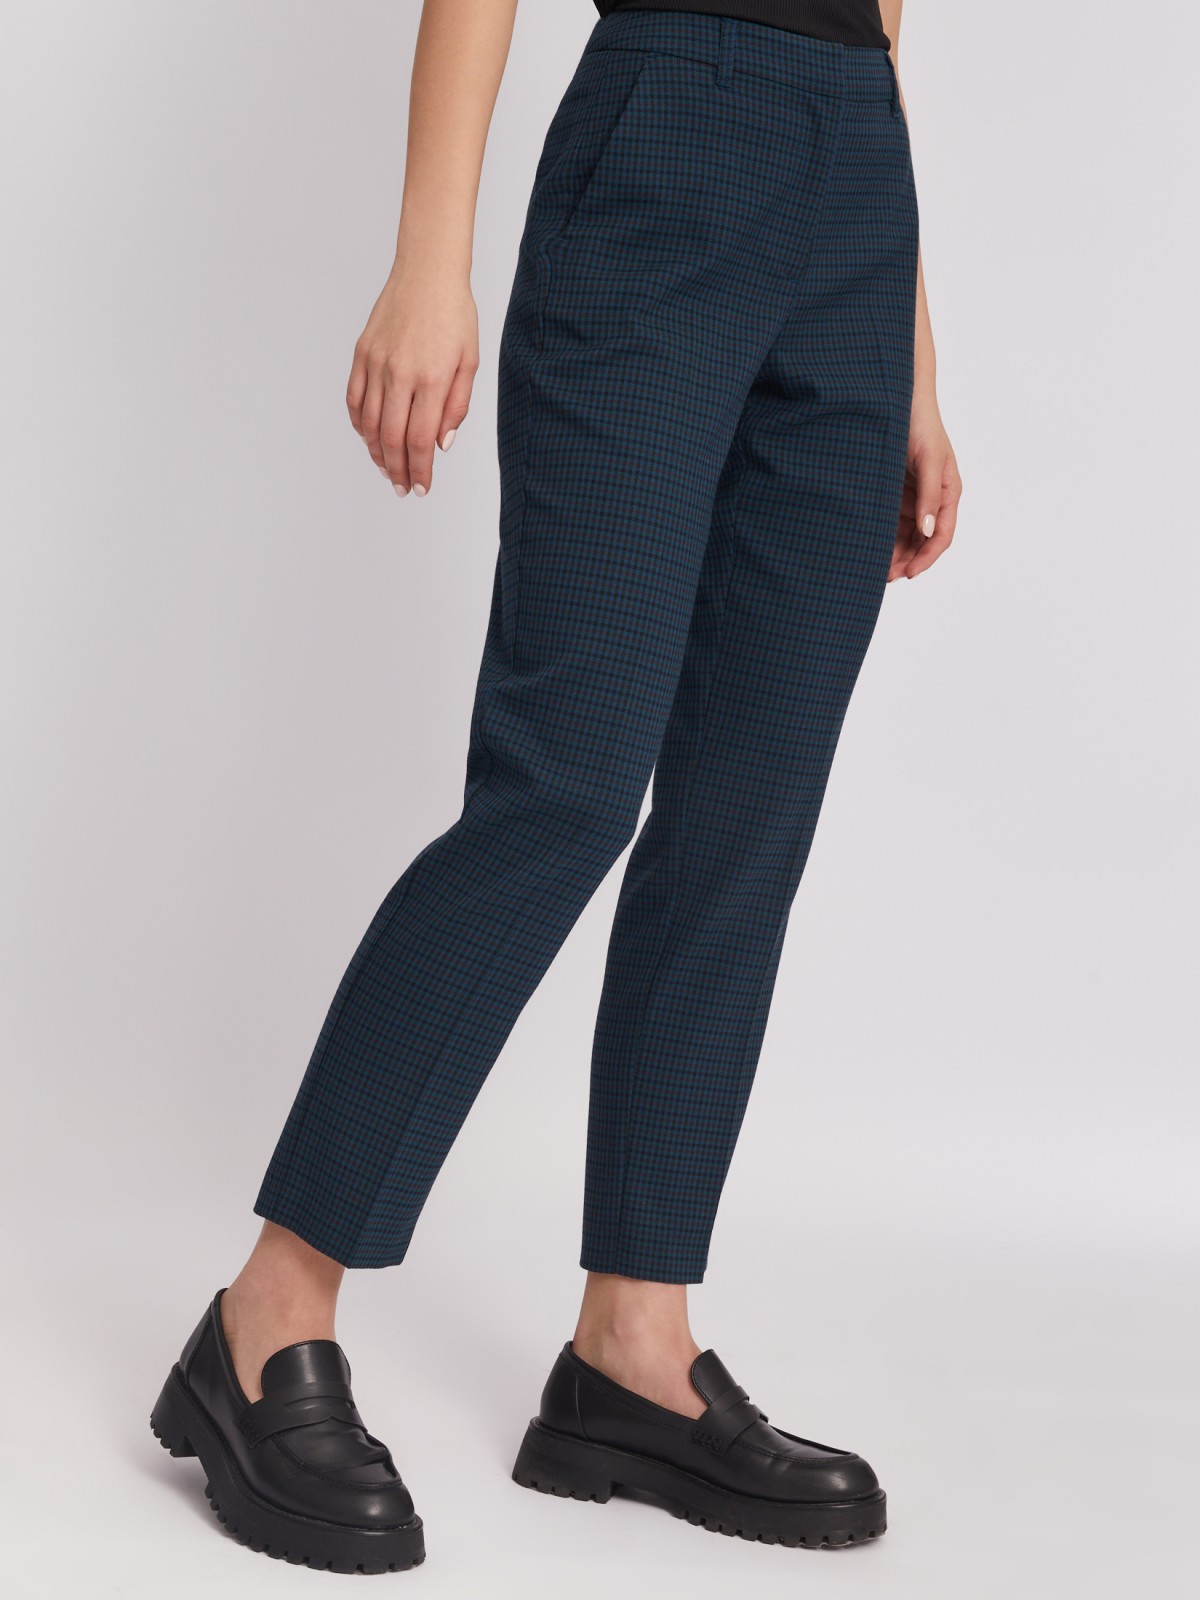 Офисные брюки силуэта Slim со стрелками и узором в клетку zolla 023337366082, цвет темно-бирюзовый, размер XS - фото 4